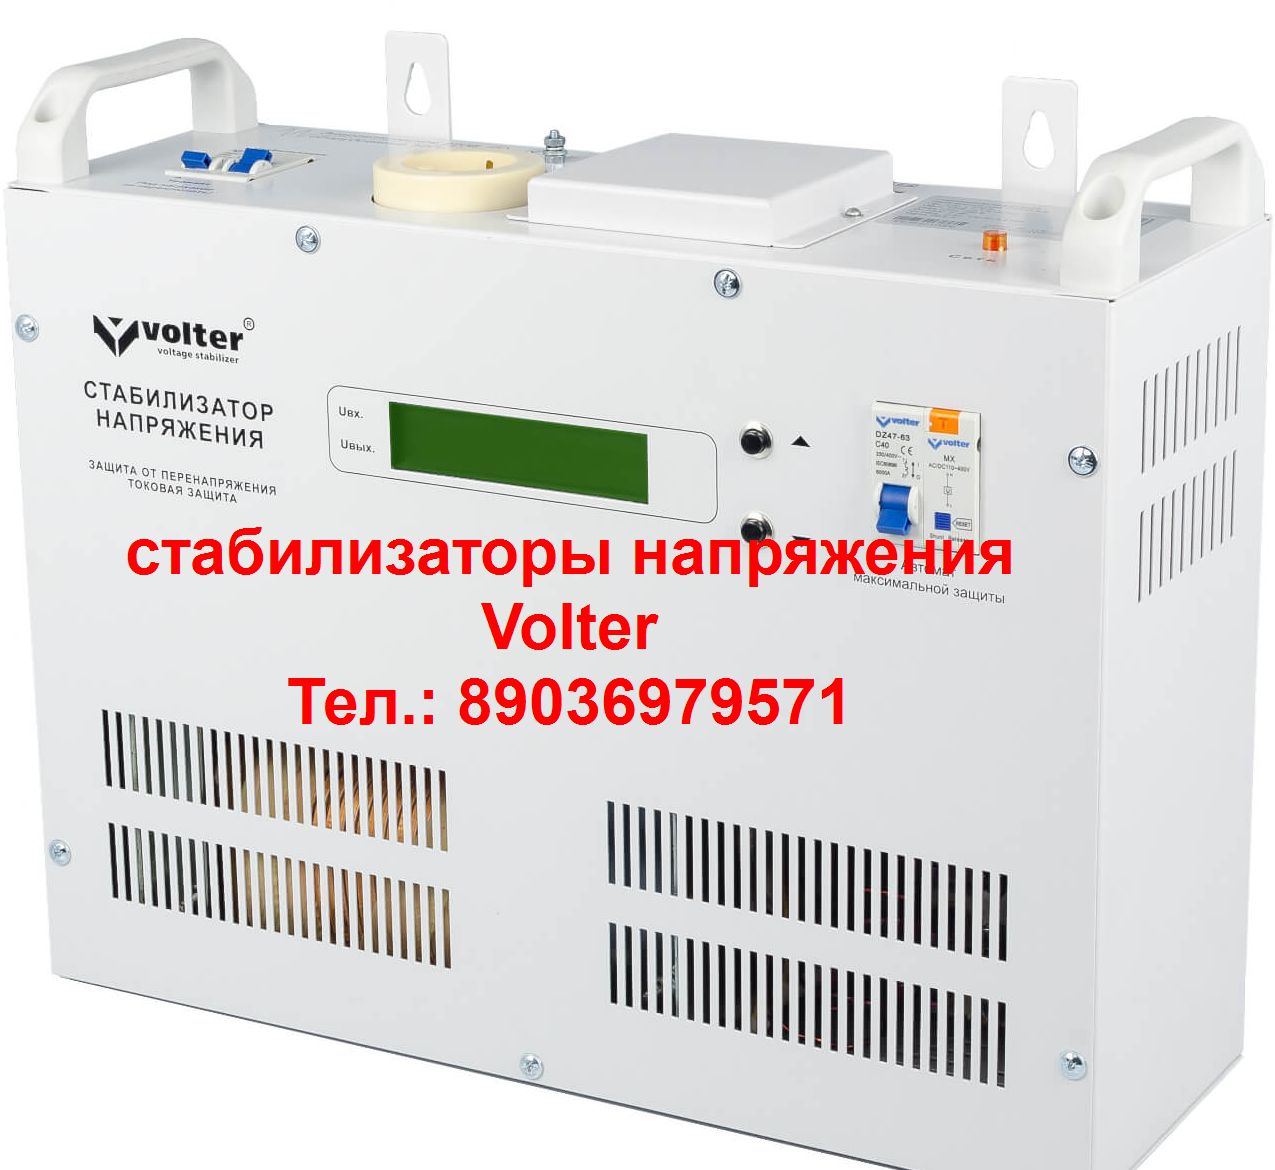 Пассик для Веги 109 Унитра G602 новый ремень пасик для Вега 109 Unitra G-602 в городе Москва, фото 5, телефон продавца: +7 (903) 697-95-71